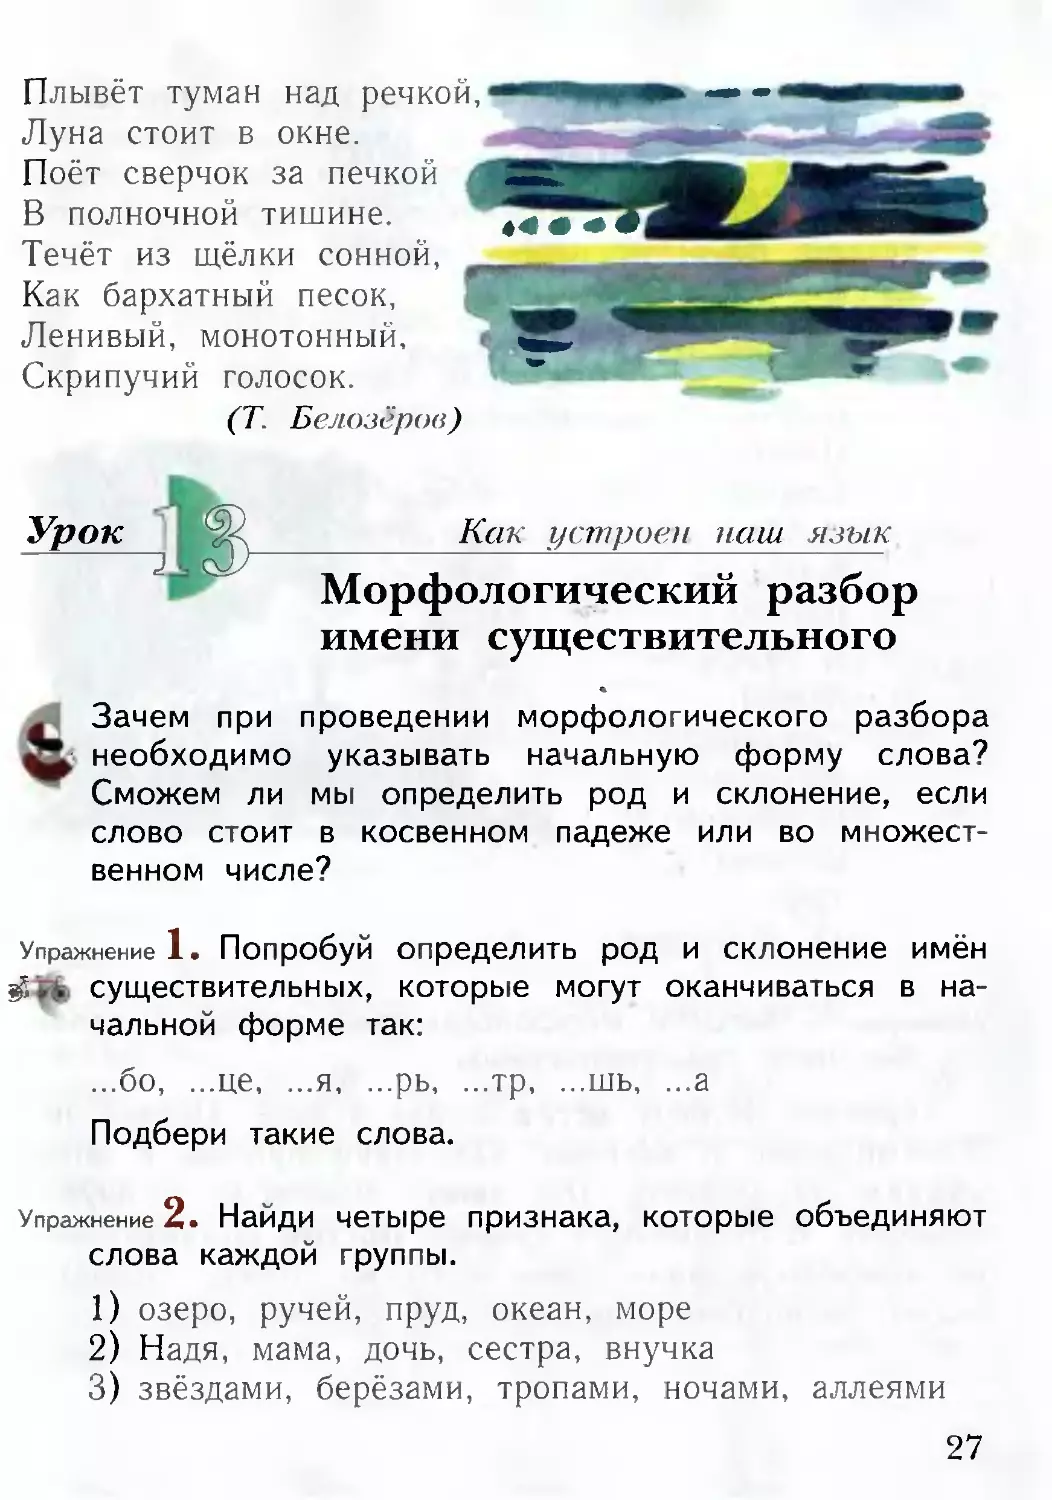 Русский 2 часть 4 класс страница 87